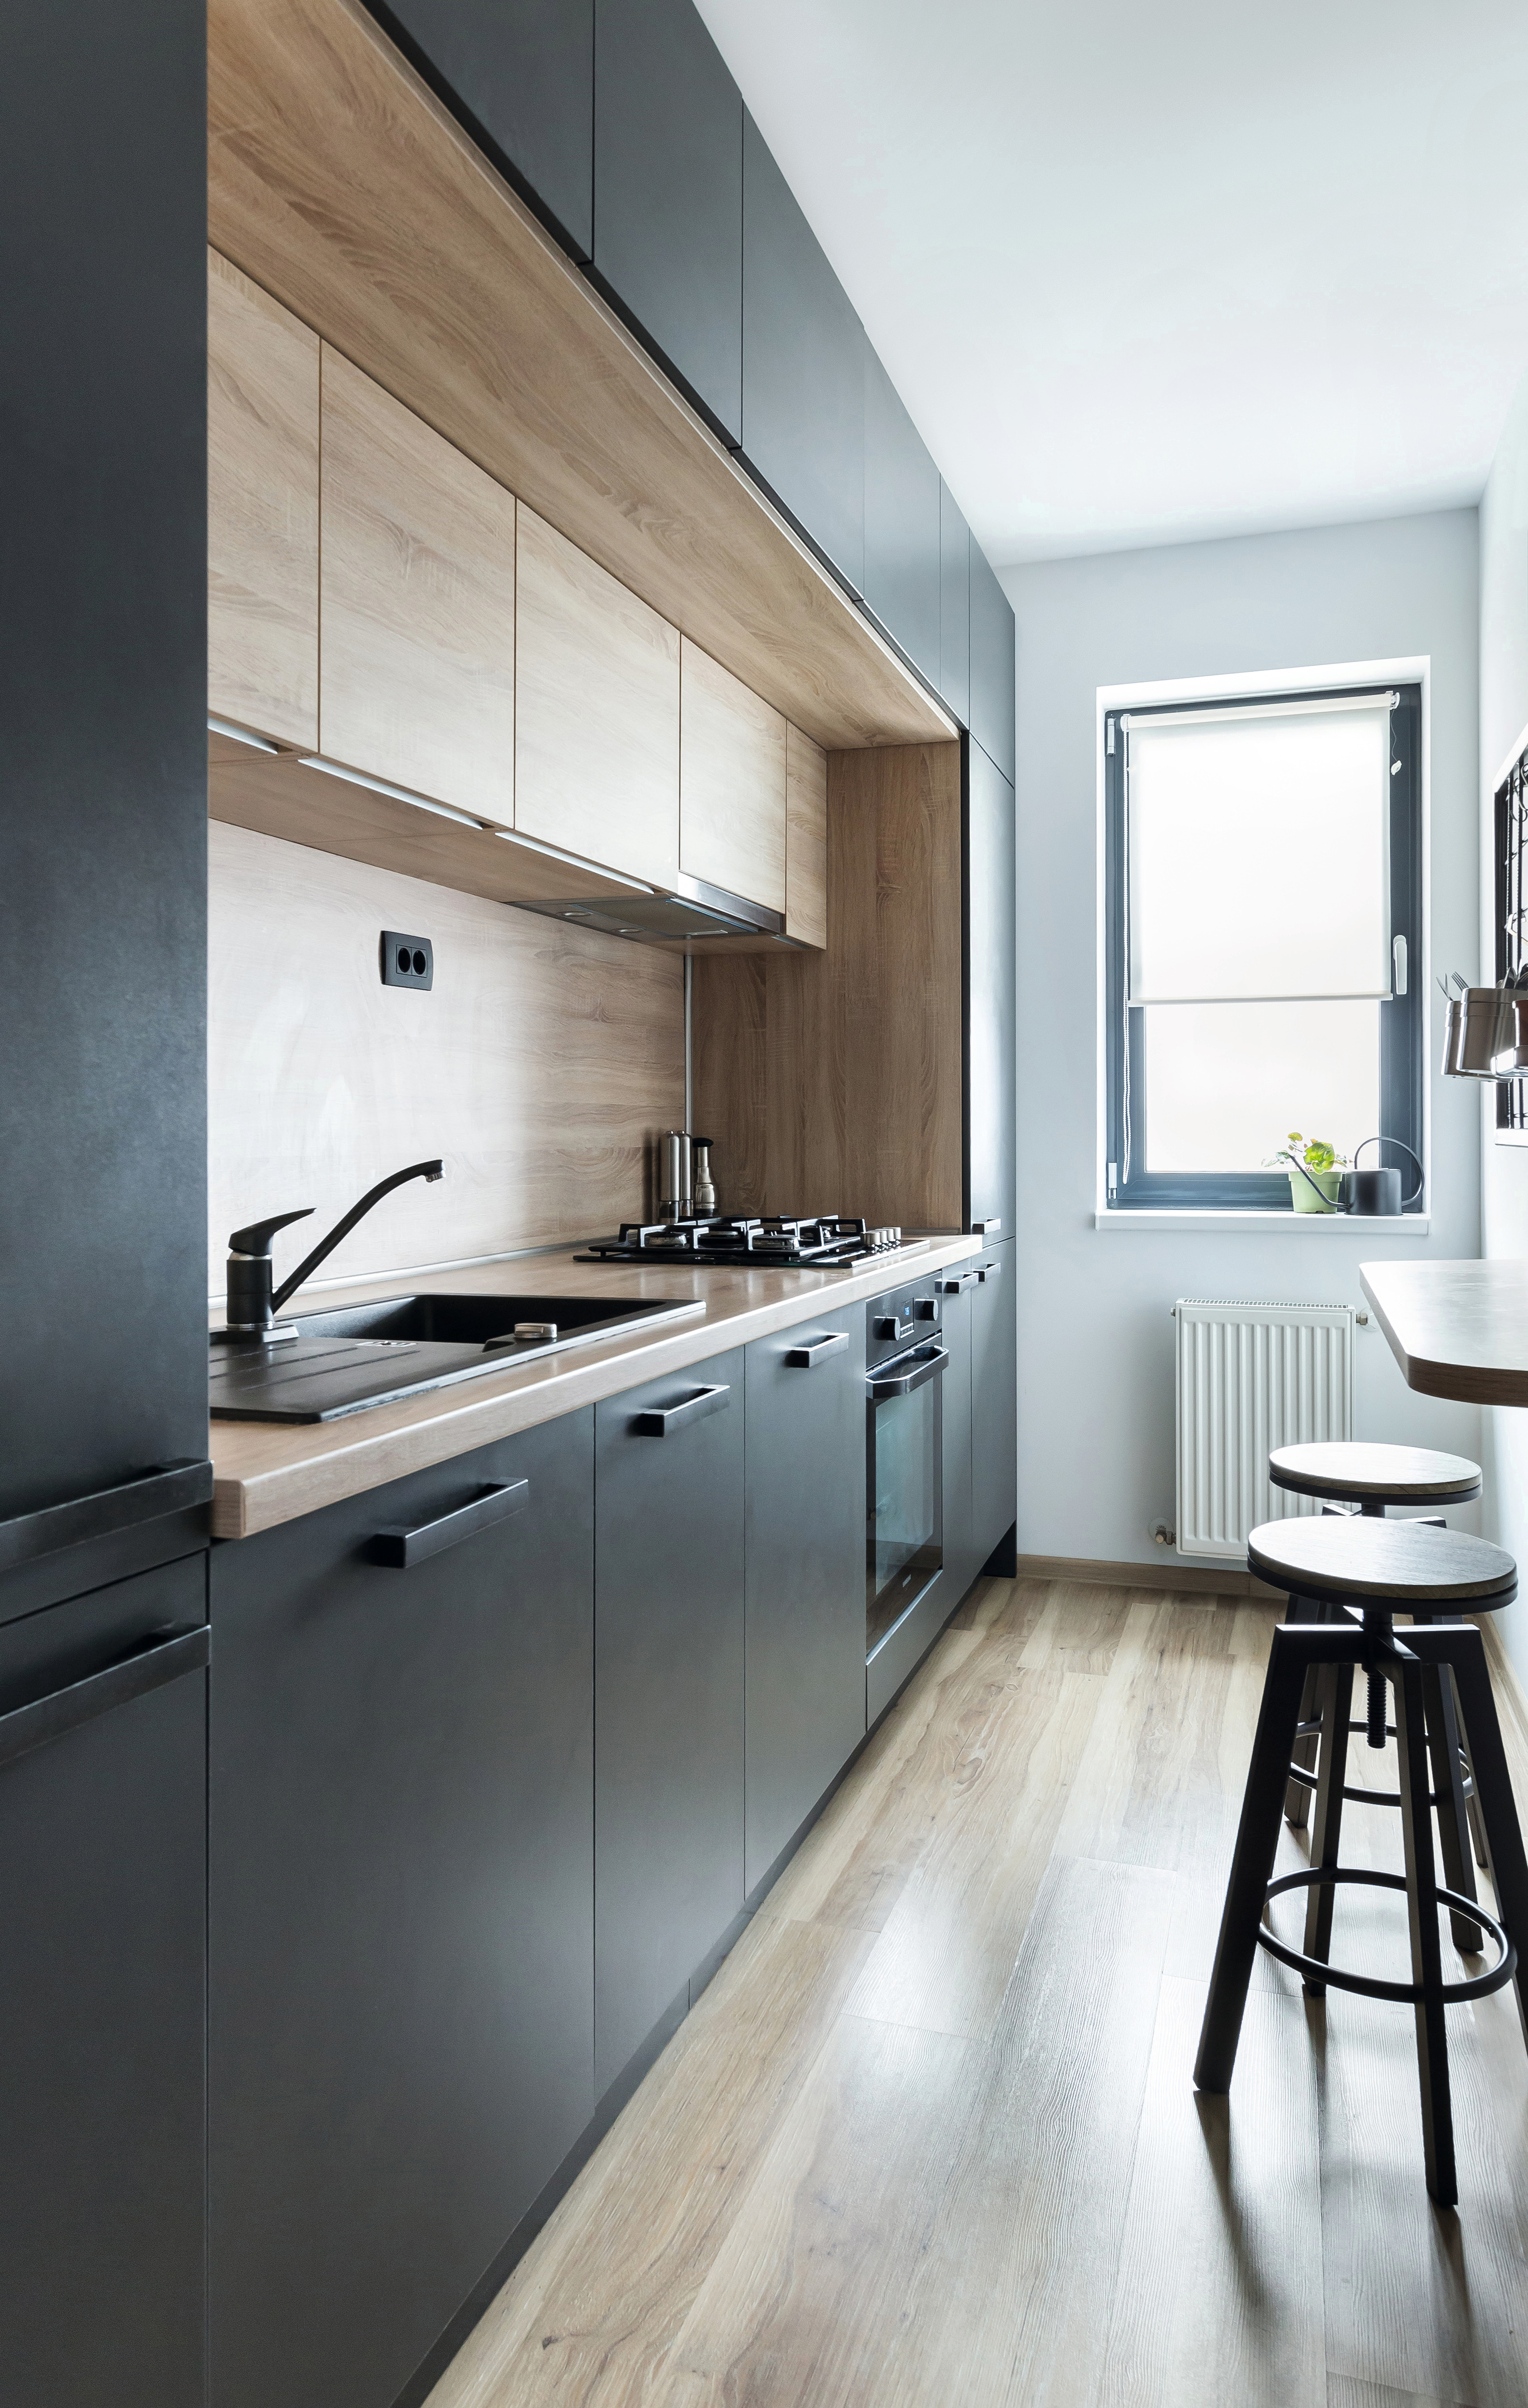 Un choix de couleurs judicieux et une disposition géométrique ont permis de créer une cuisine au style moderne.